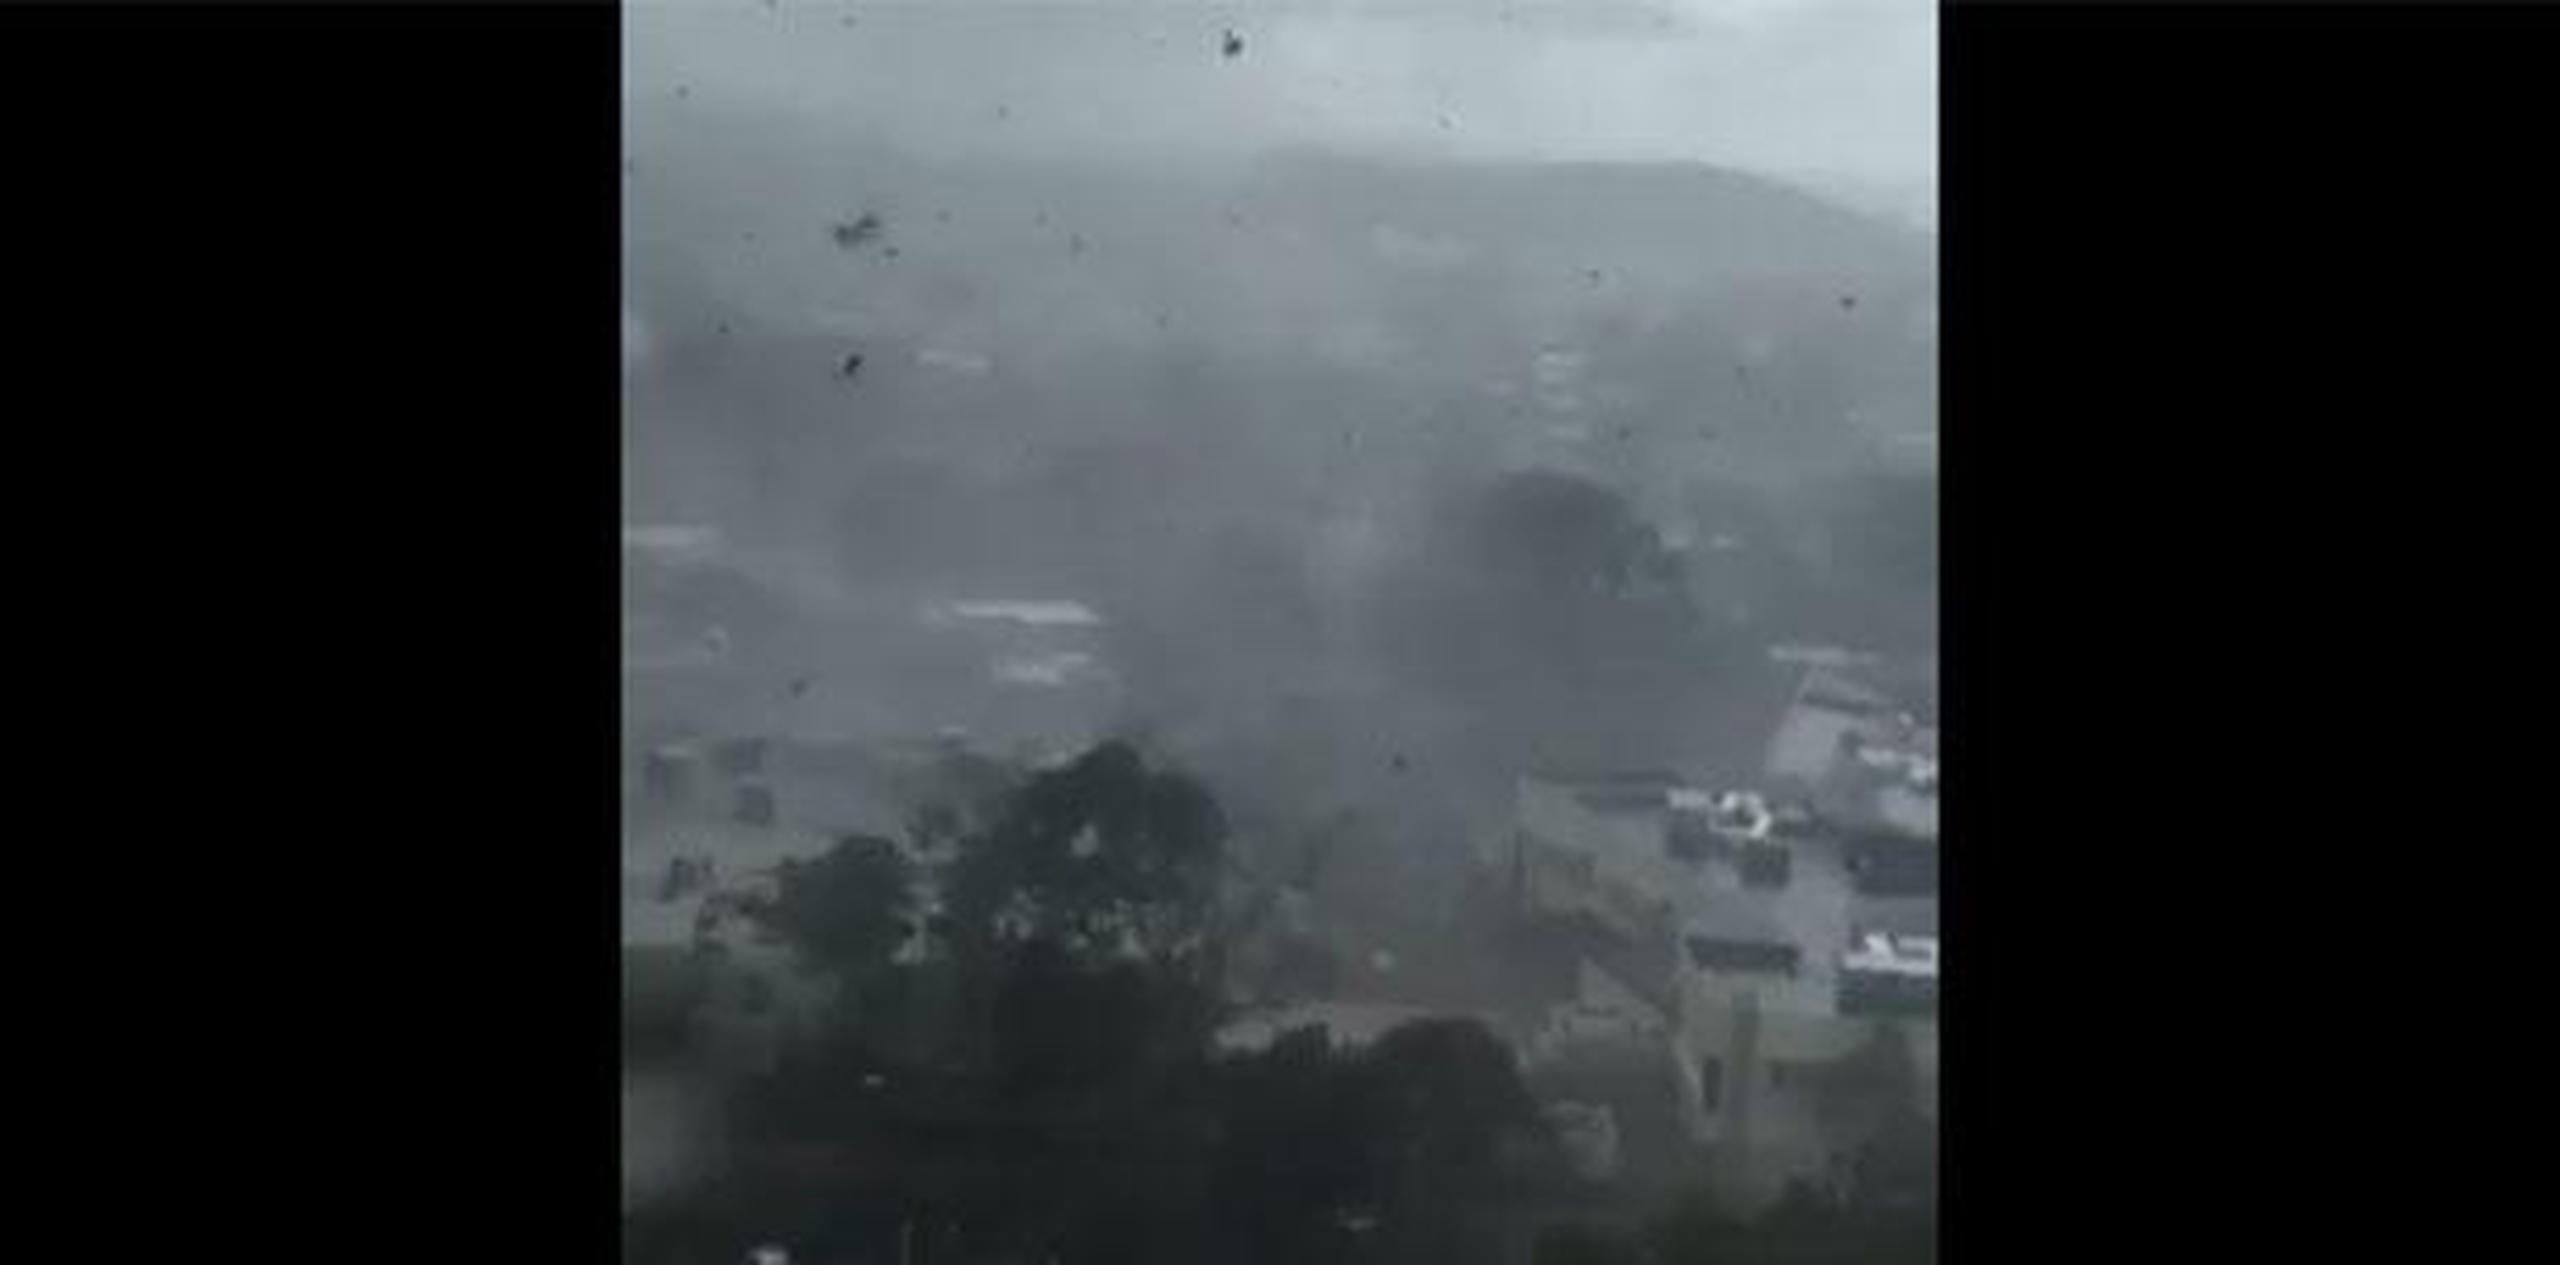 El meteorólogo detalló que el tornado recorrió tres cuartos de milla o alrededor de 4,500 pies entre la zona de Villa Andalucía, en Trujillo Alto, y Park Gardens, en Río Piedras.